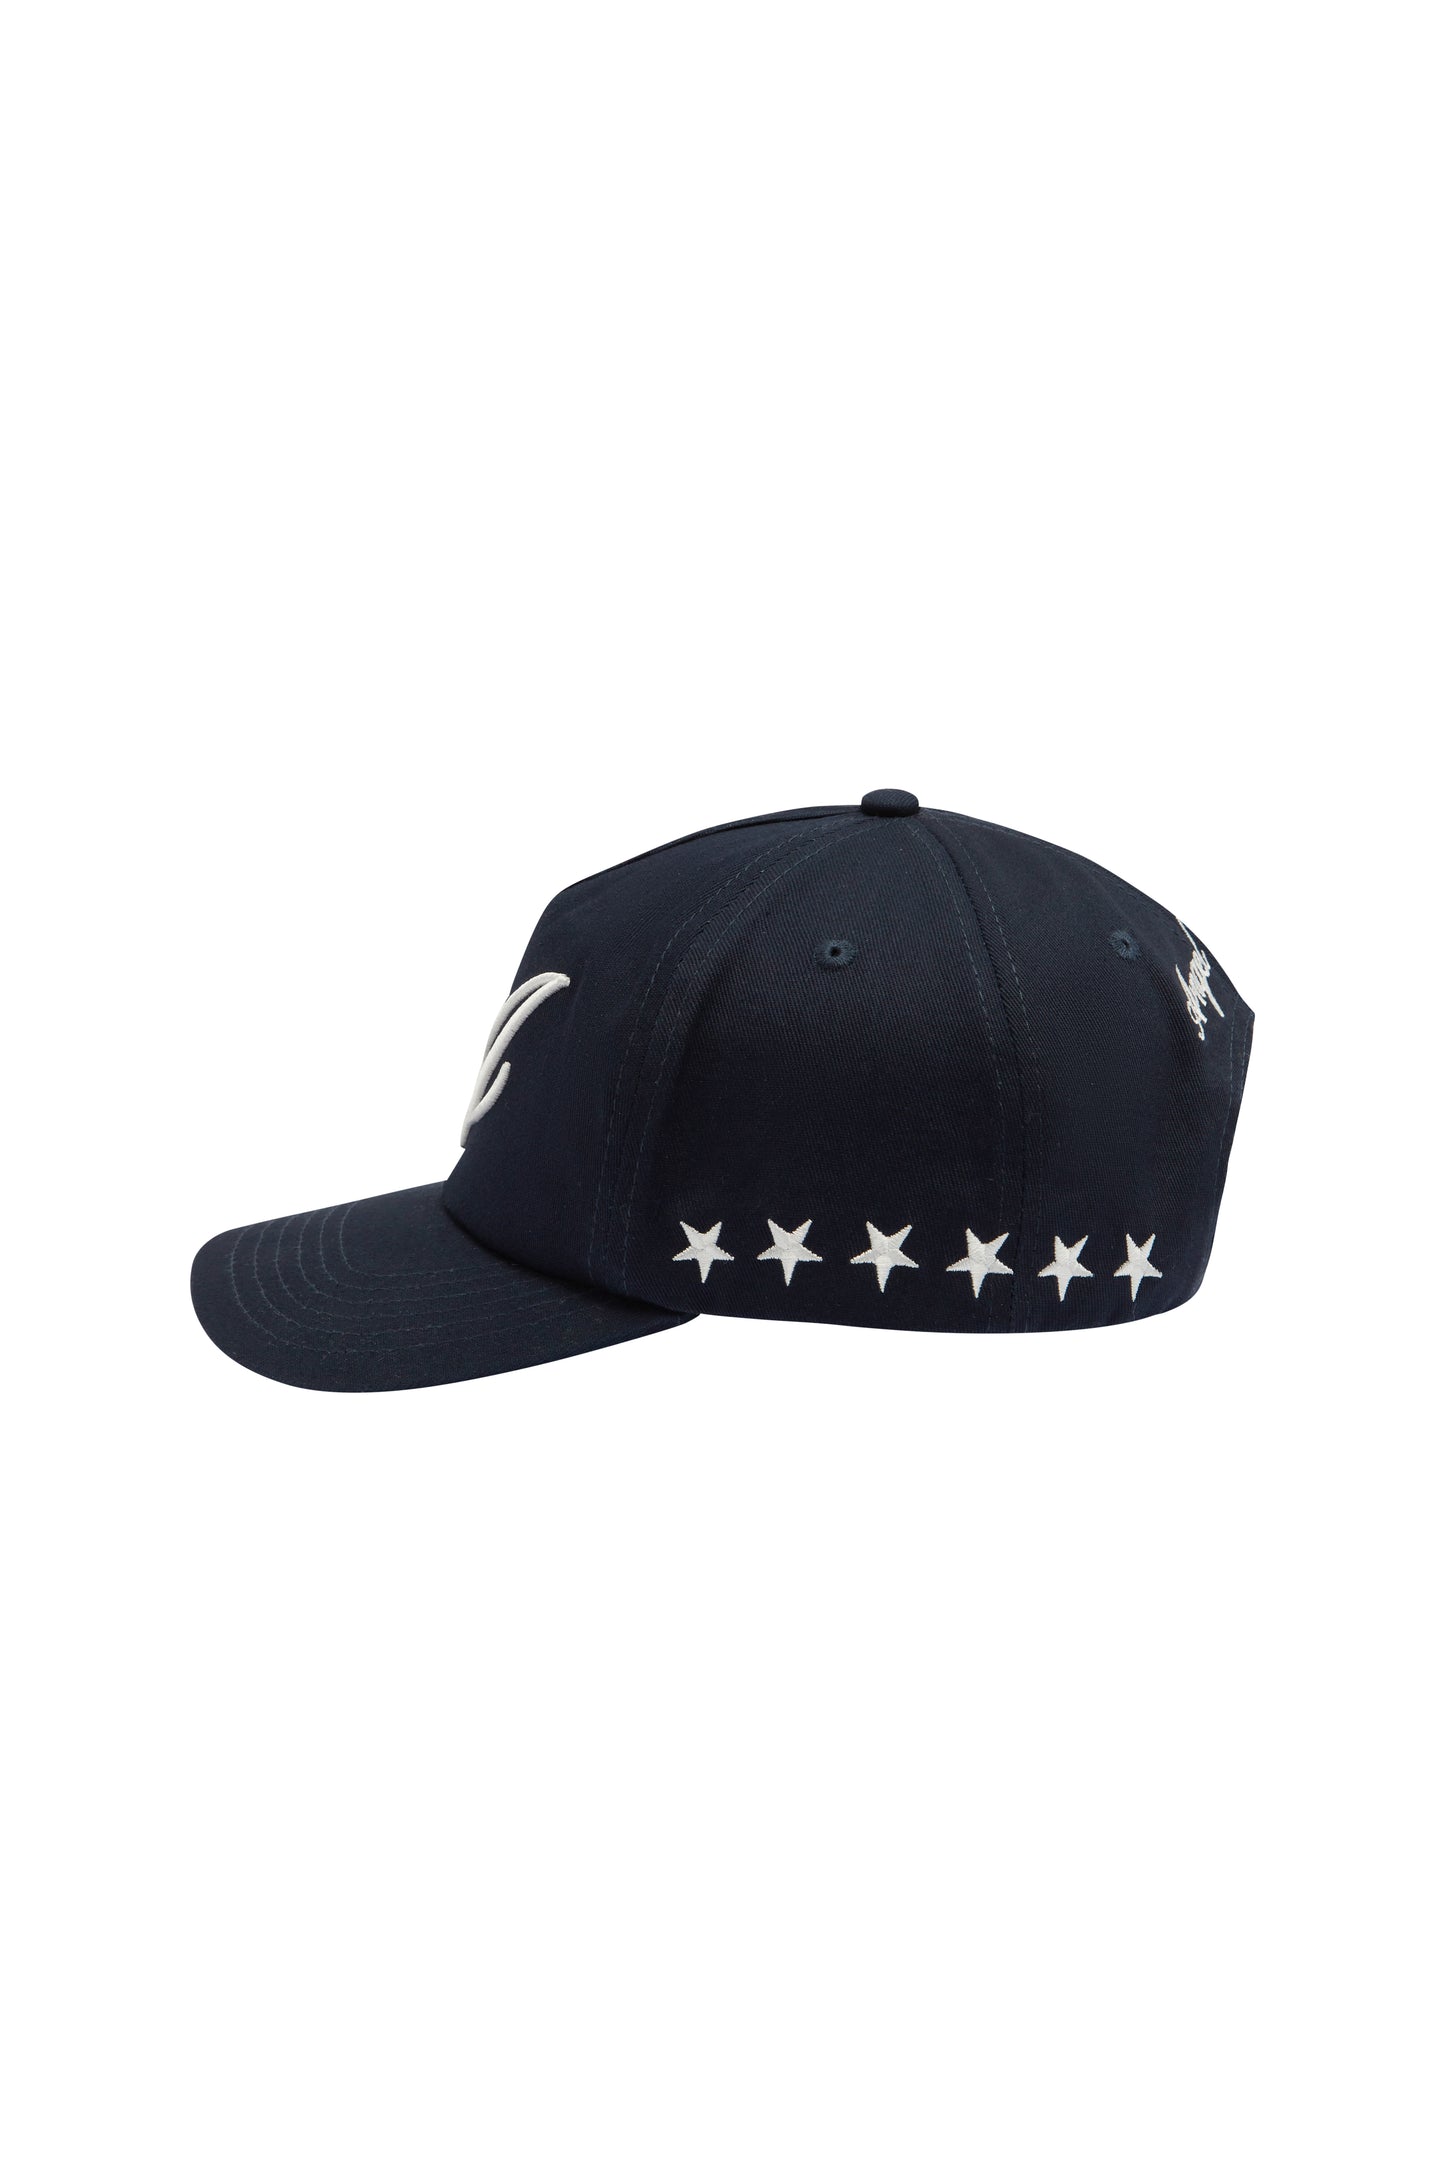 Signature Star Hat